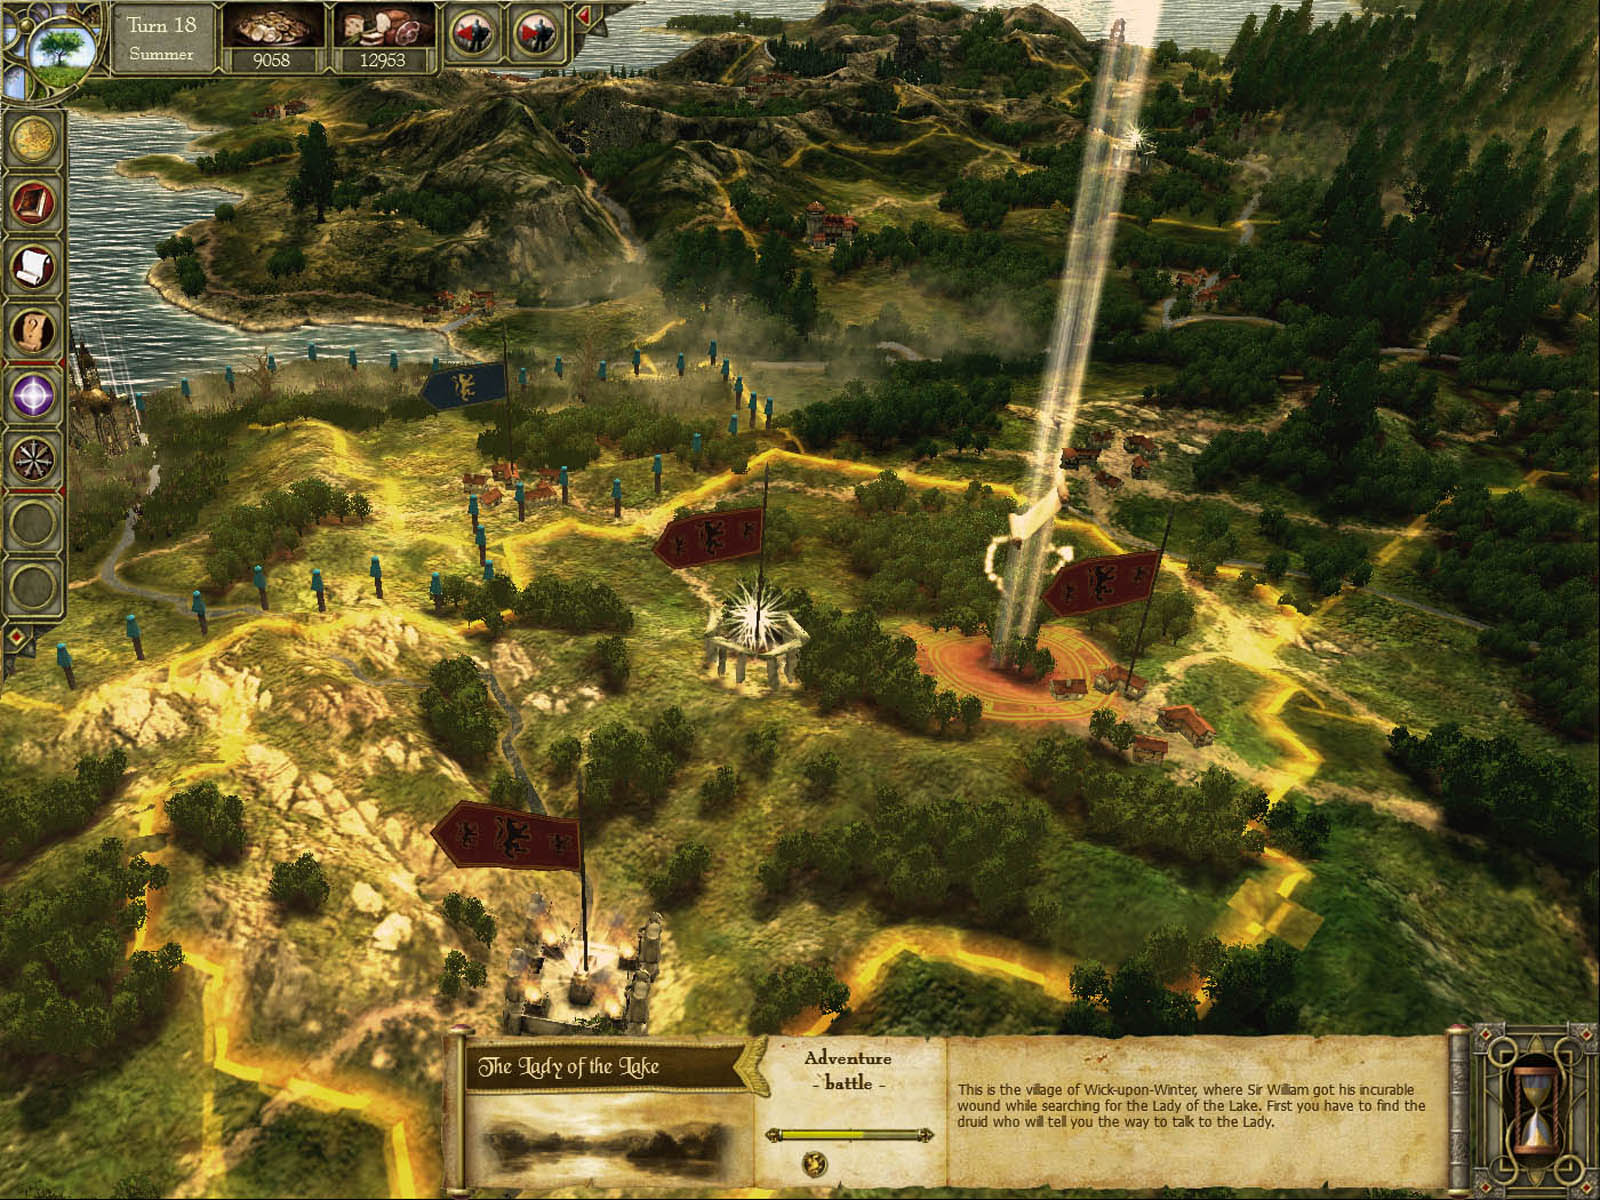 King Arthur: Legendary Artifacts DLC screenshot